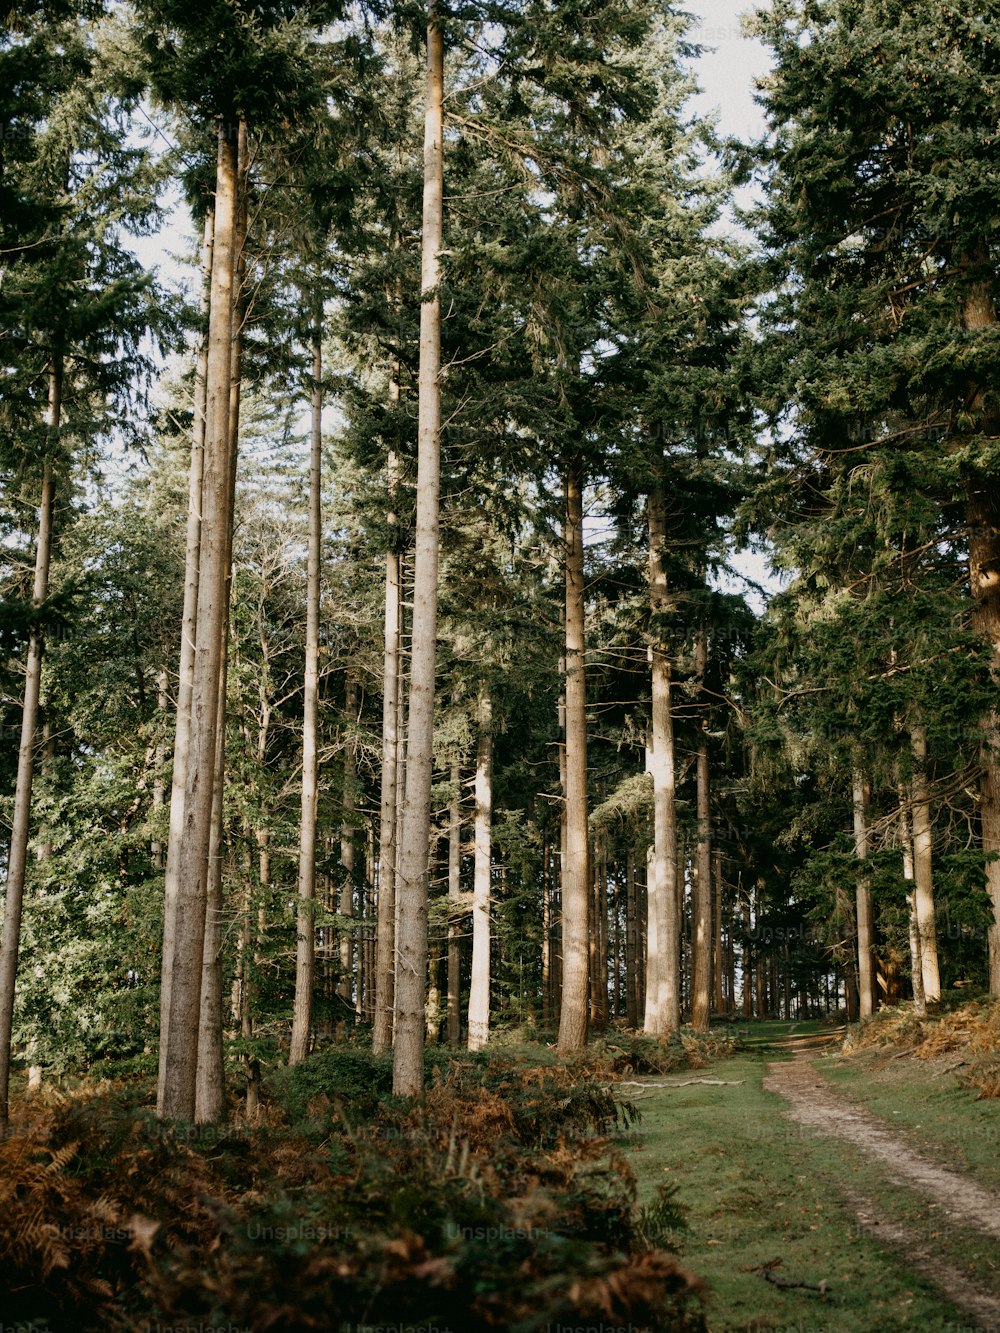 um caminho no meio de uma floresta com árvores altas